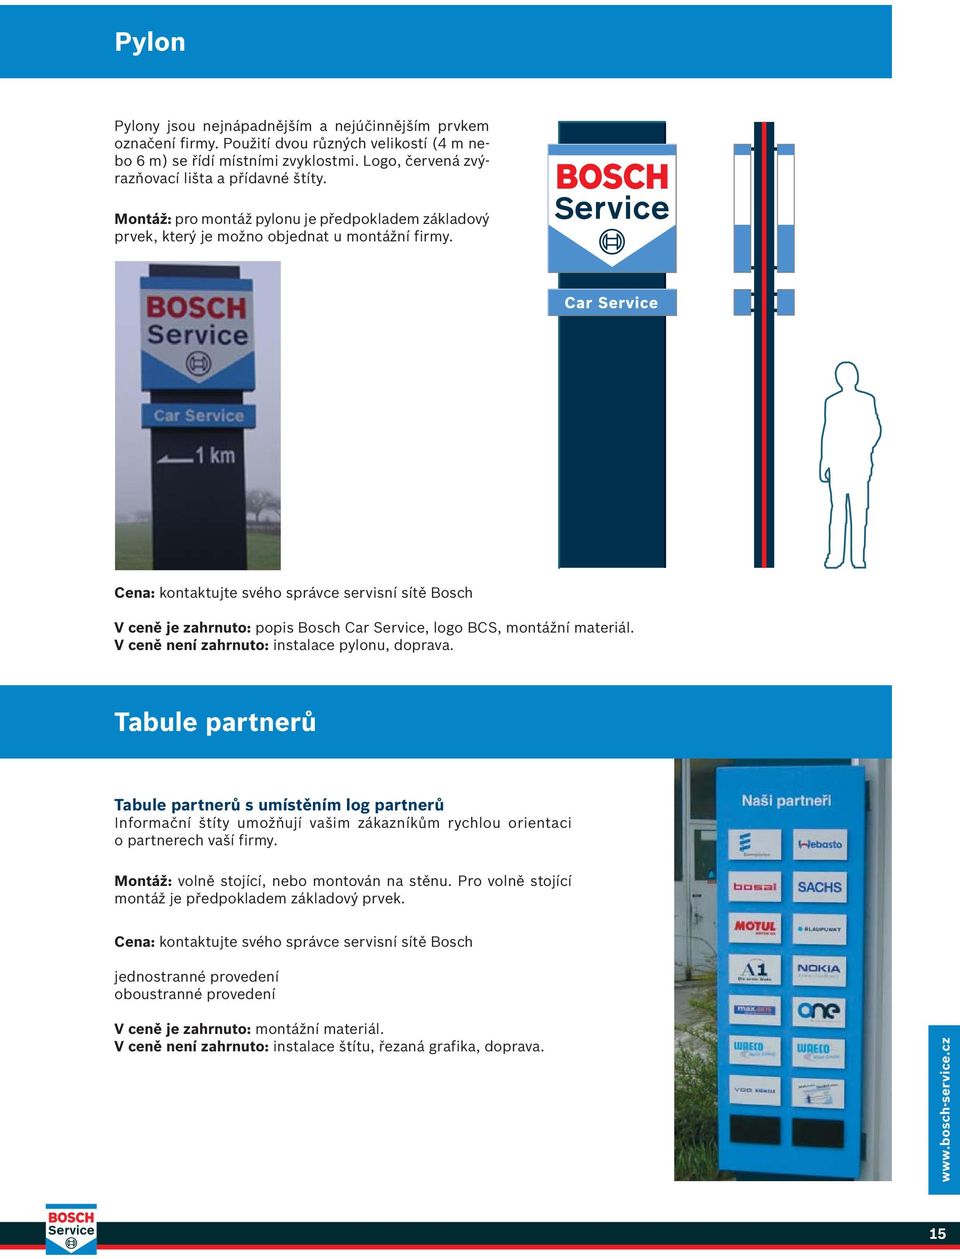 Cena: kontaktujte svého správce servisní sítě Bosch V ceně je zahrnuto: popis Bosch Car Service, logo BCS, montážní materiál. V ceně není zahrnuto: instalace pylonu, doprava.